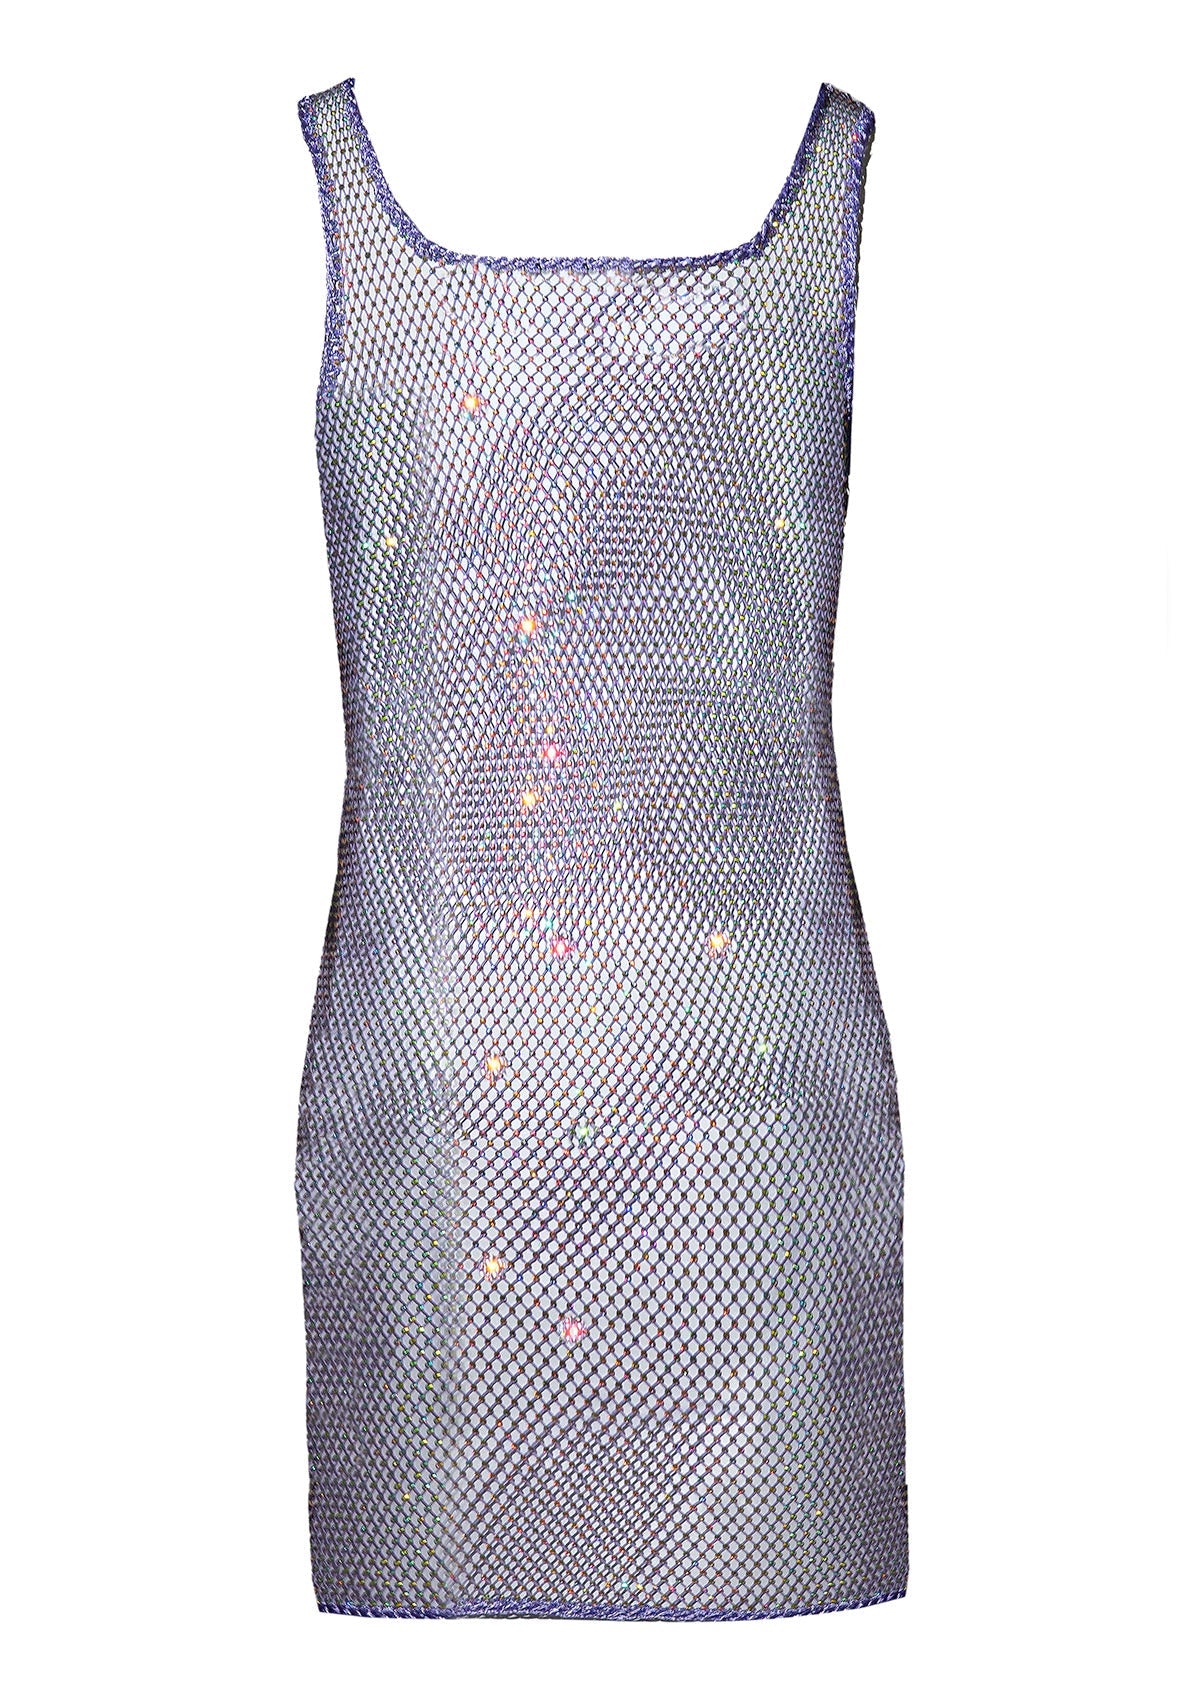 Crystal Dress Liu Lilac